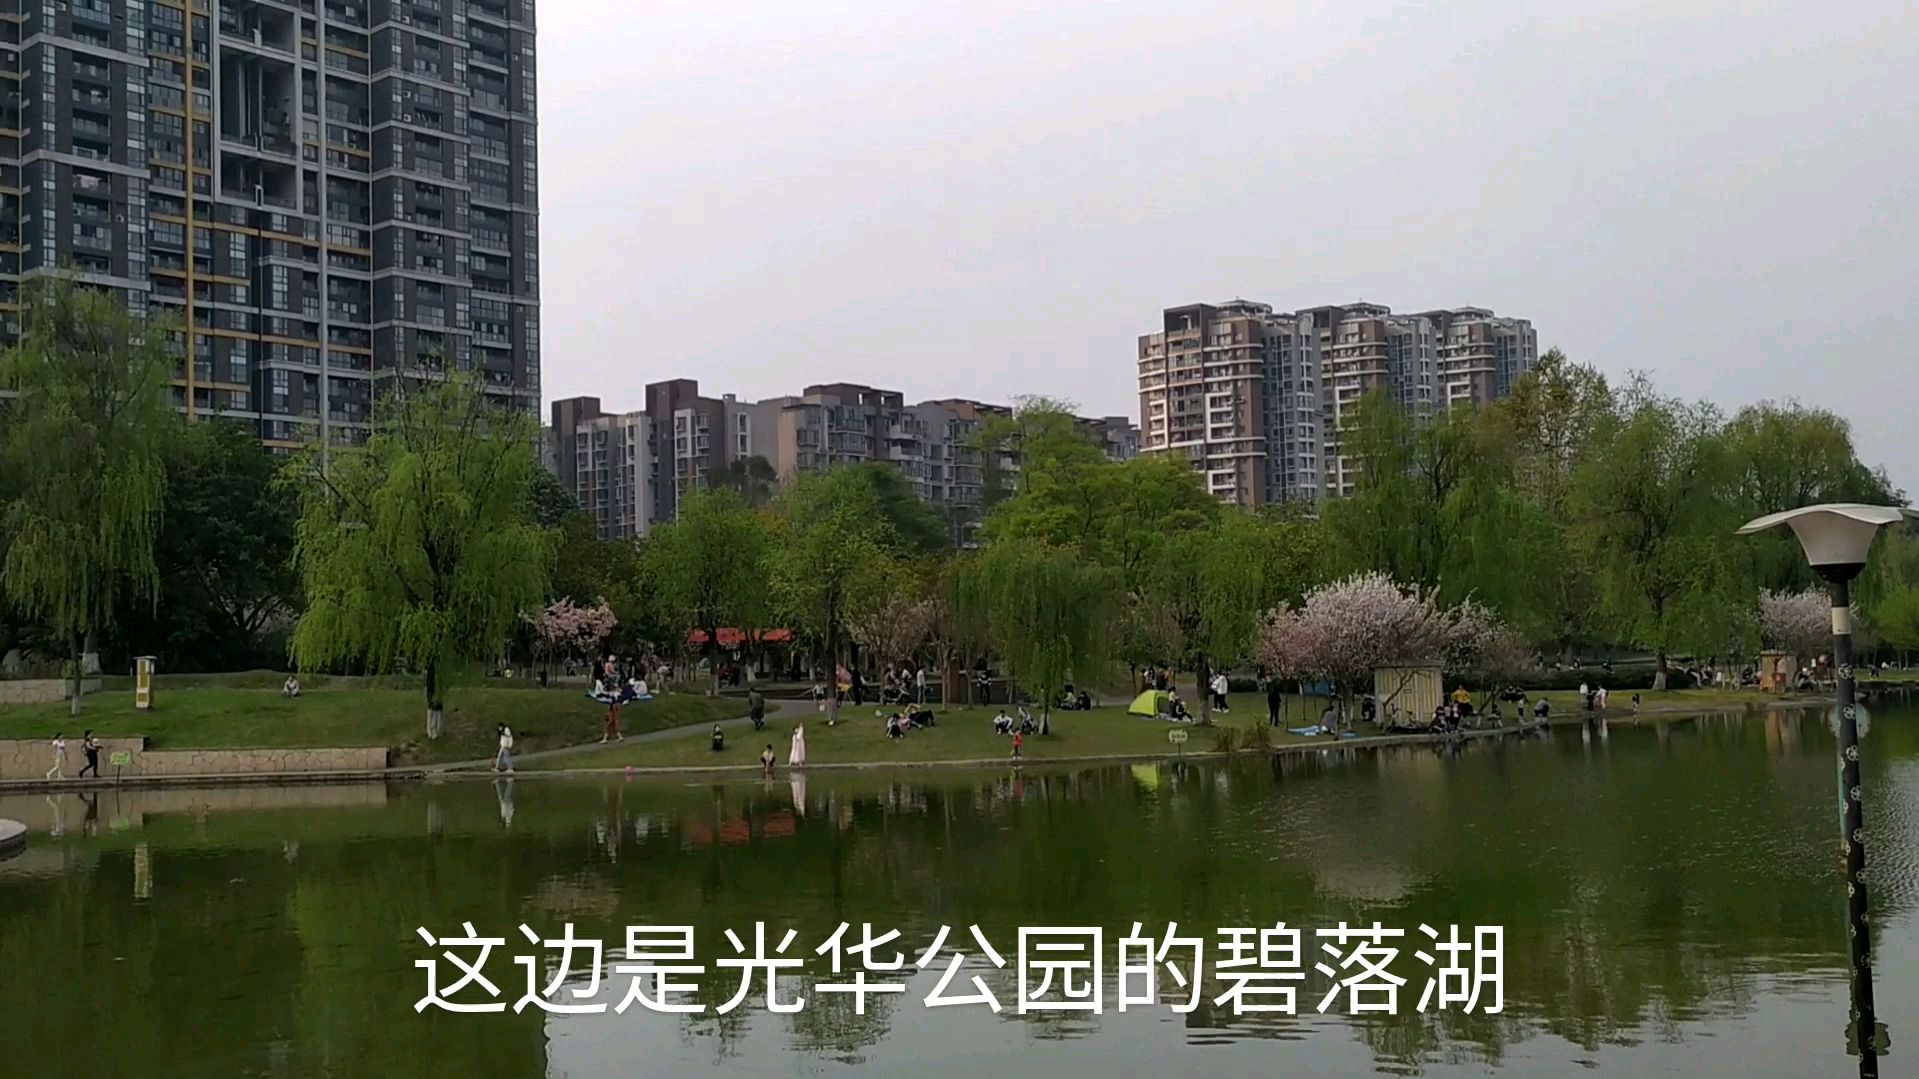 实拍成都温江光华公园周边,环境优美,很宜居,适合养老!